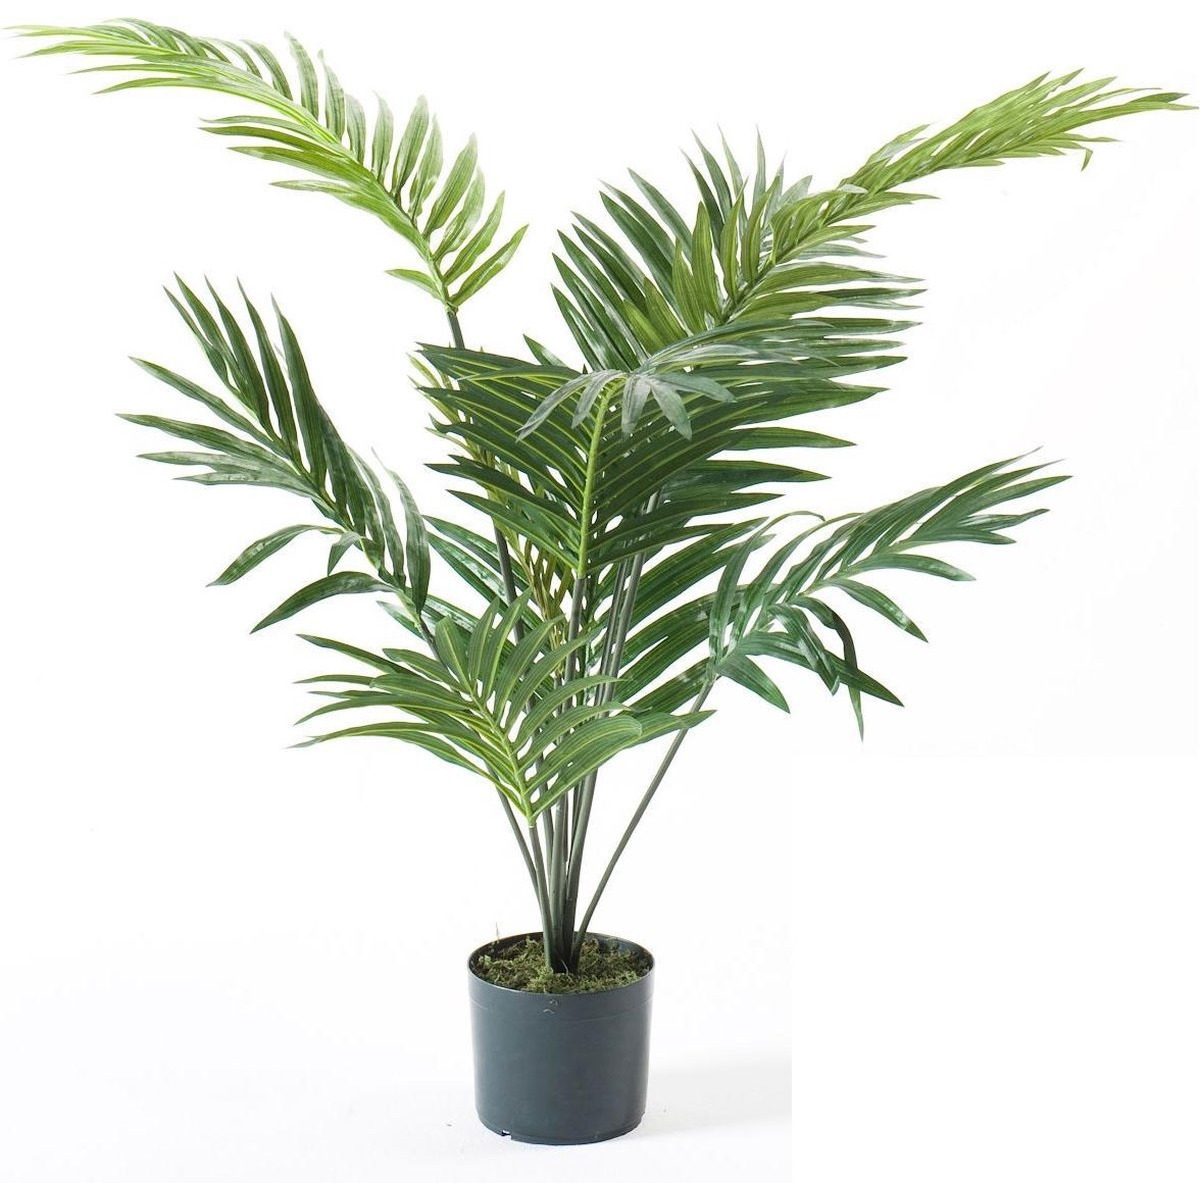 Kunstplant palmboom 90 cm groen in pot